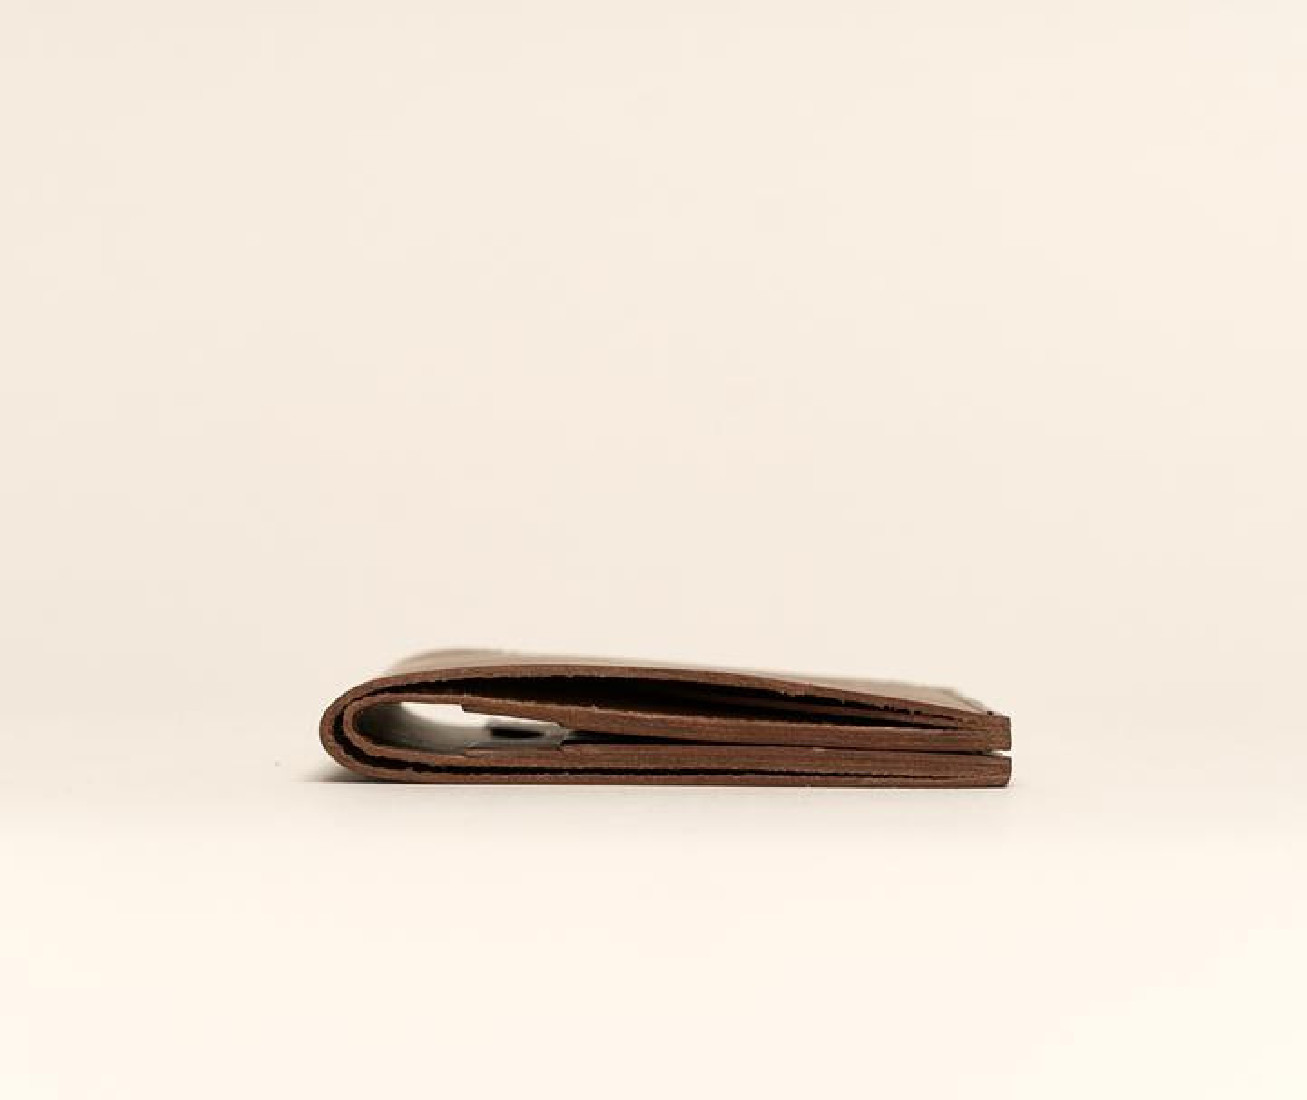 Paper Republic the square | leather wallet cognac